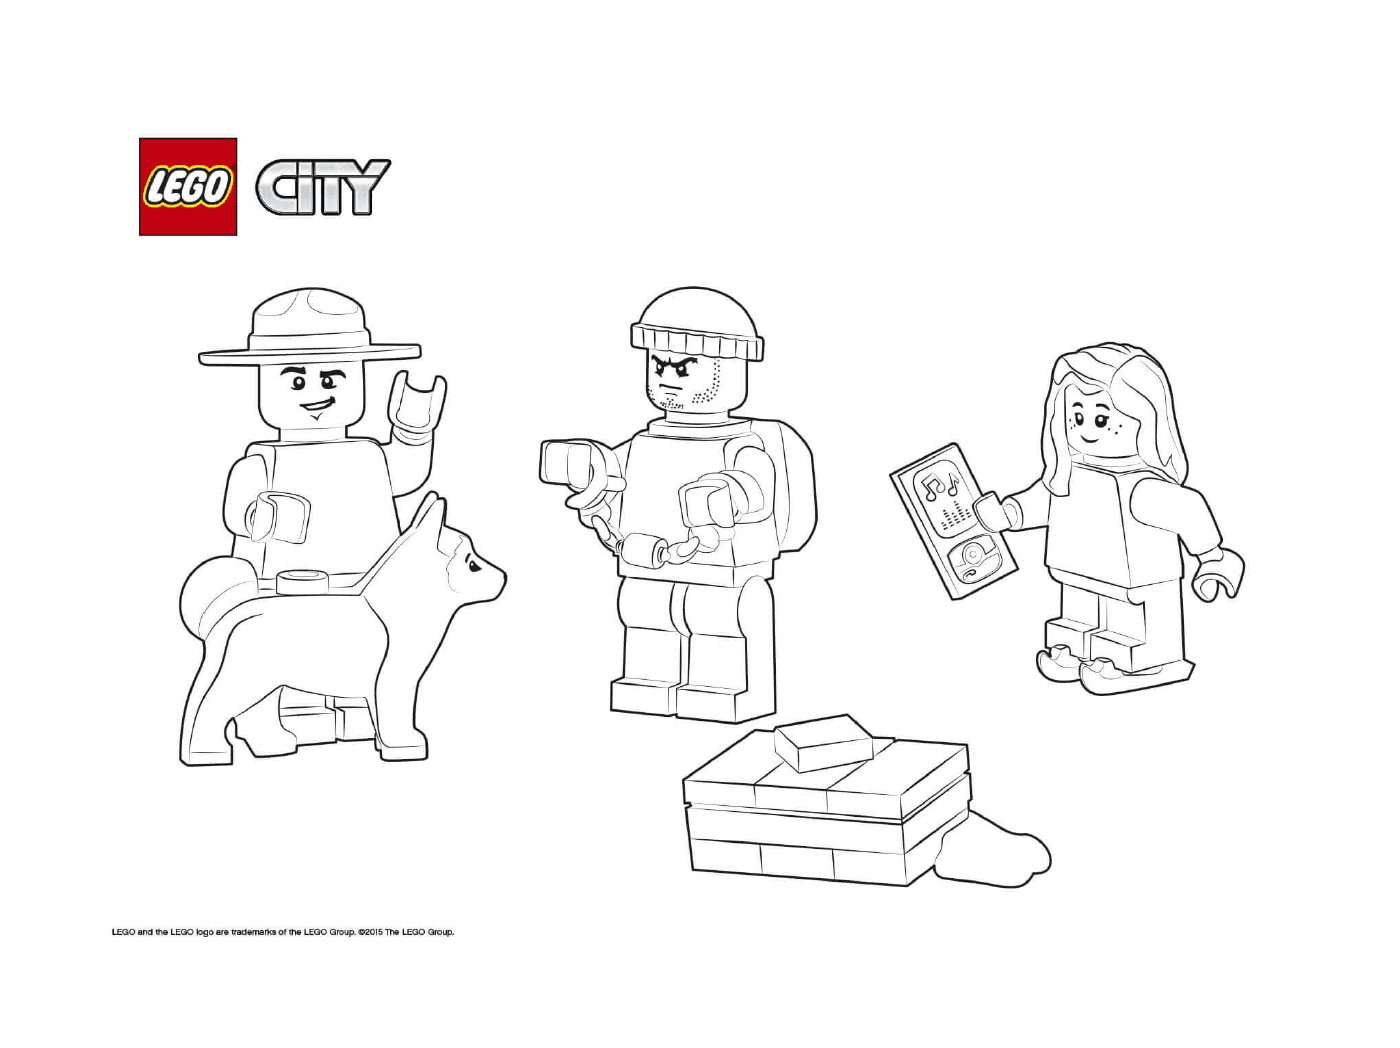   Cherif Lego City et prisonnier 